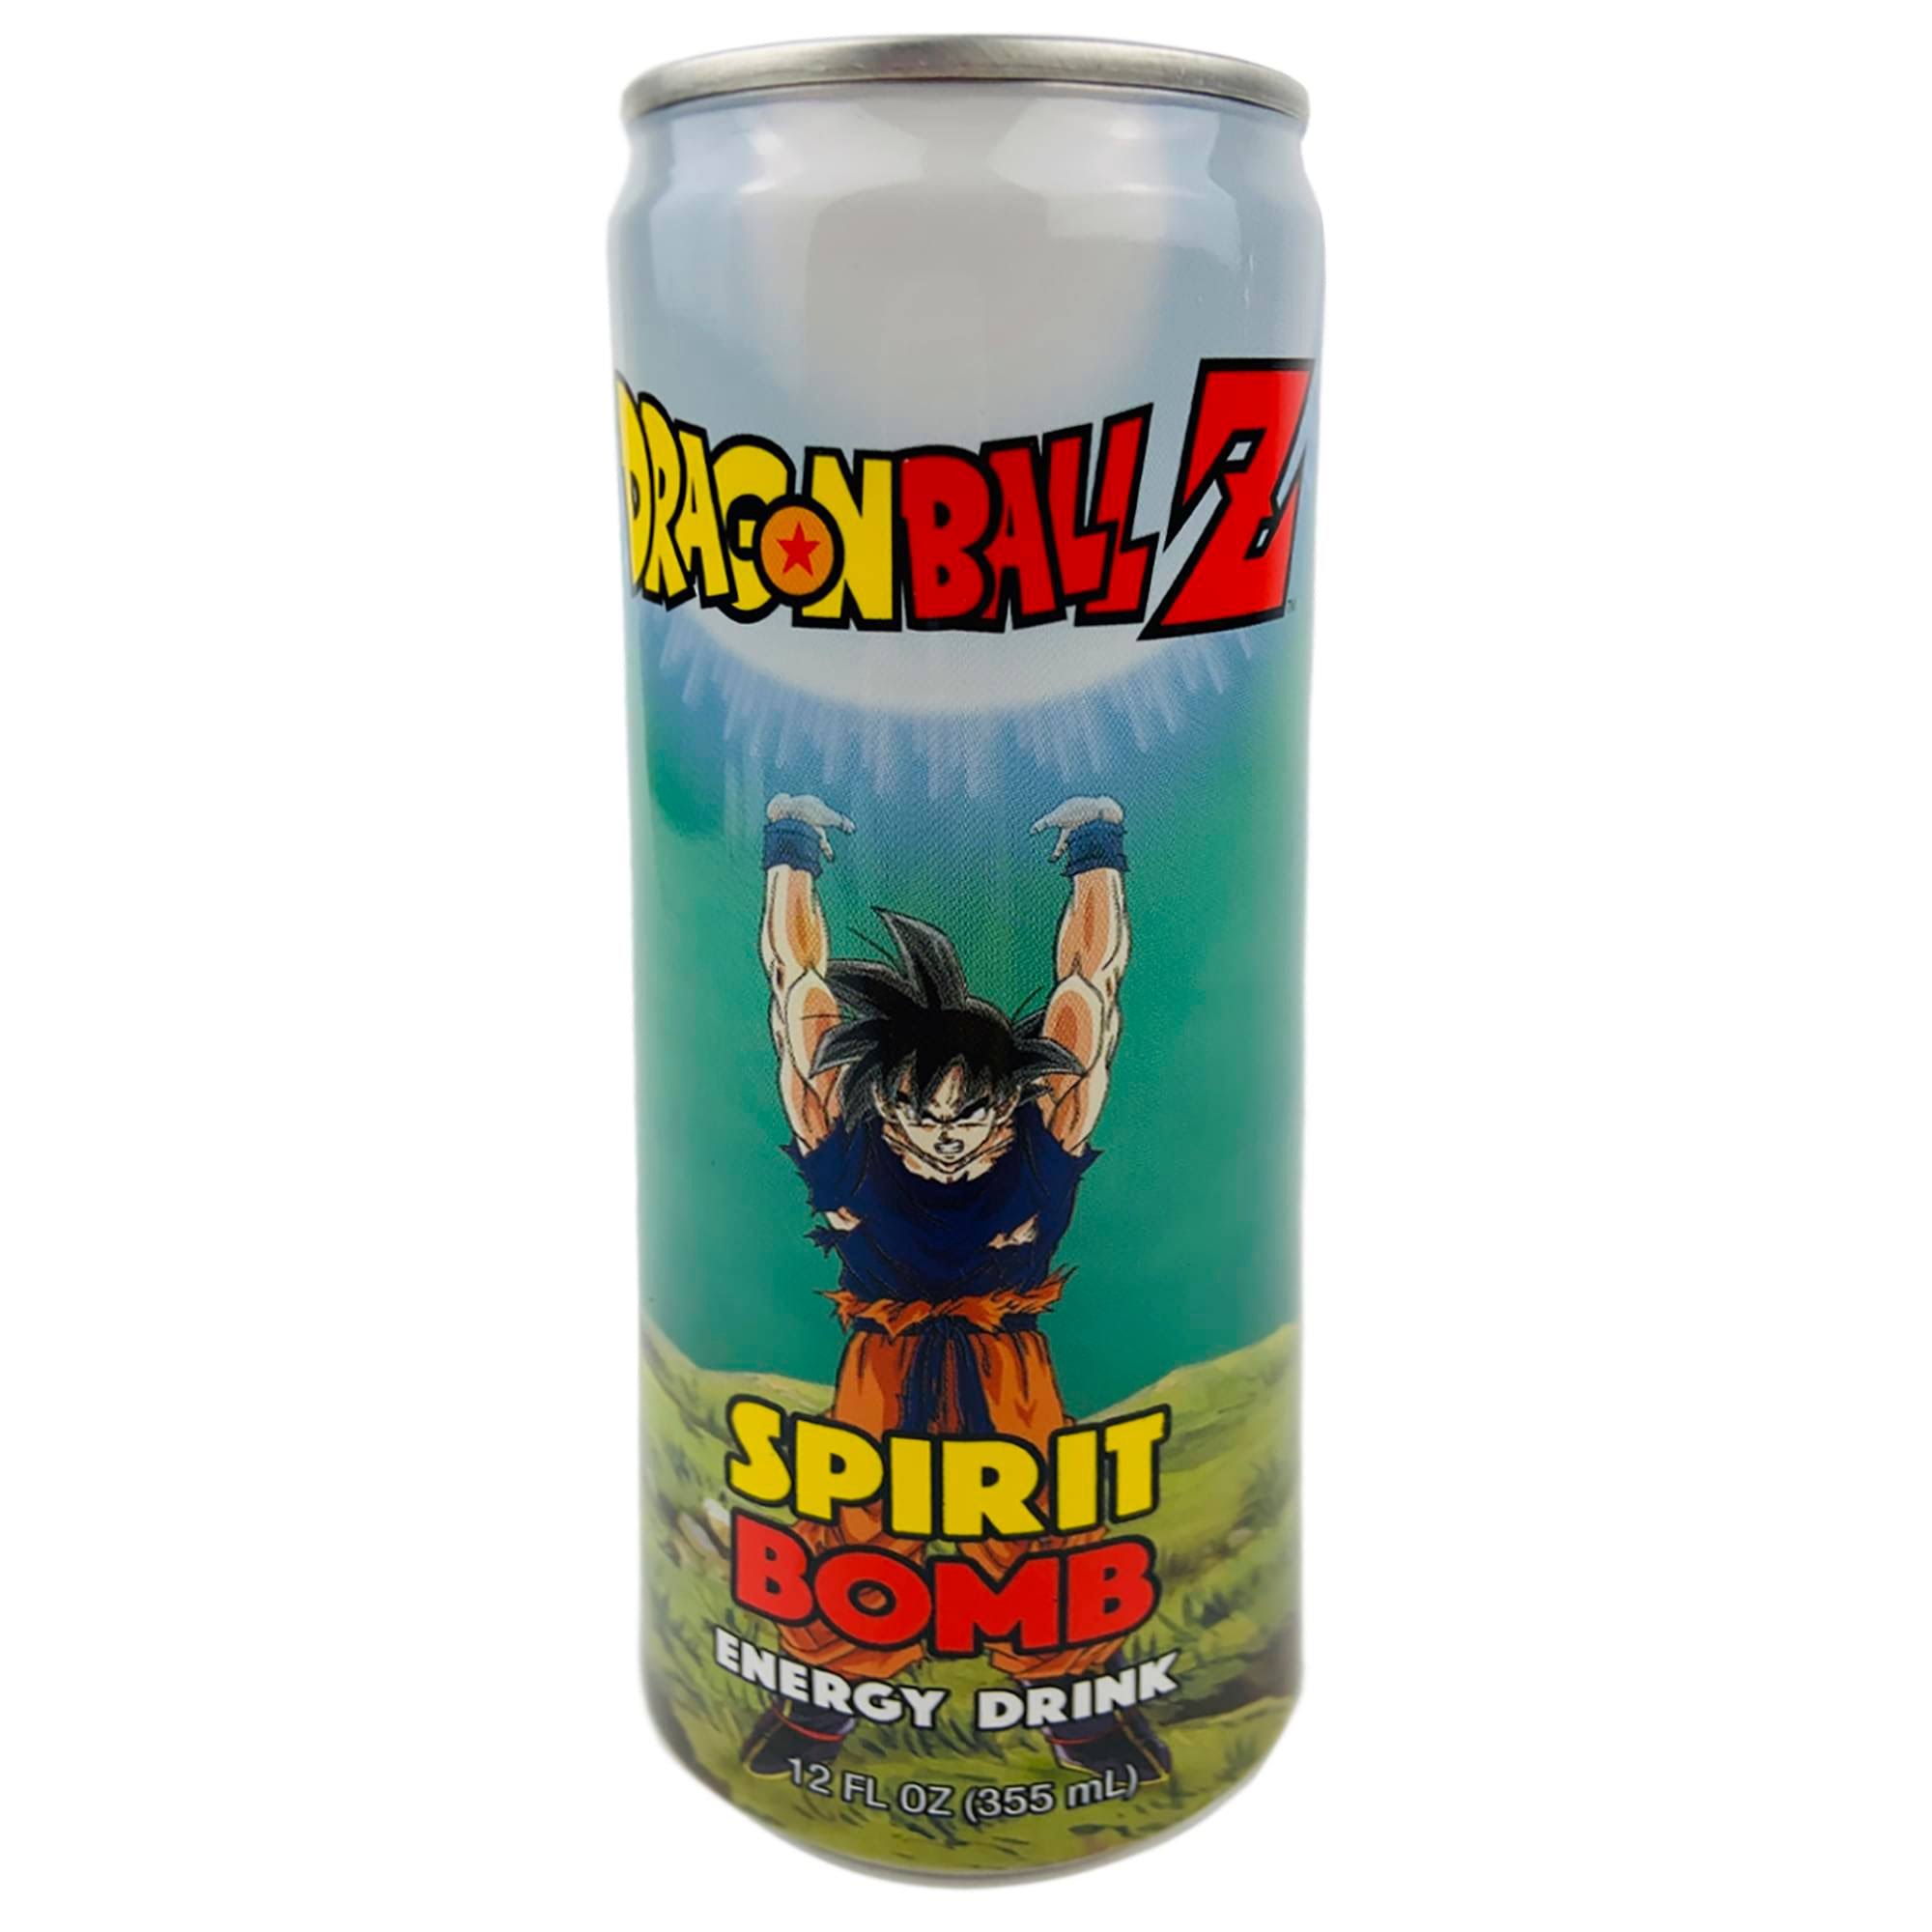 Dragonball Z Spirit Bomb Energy Drink 355ml